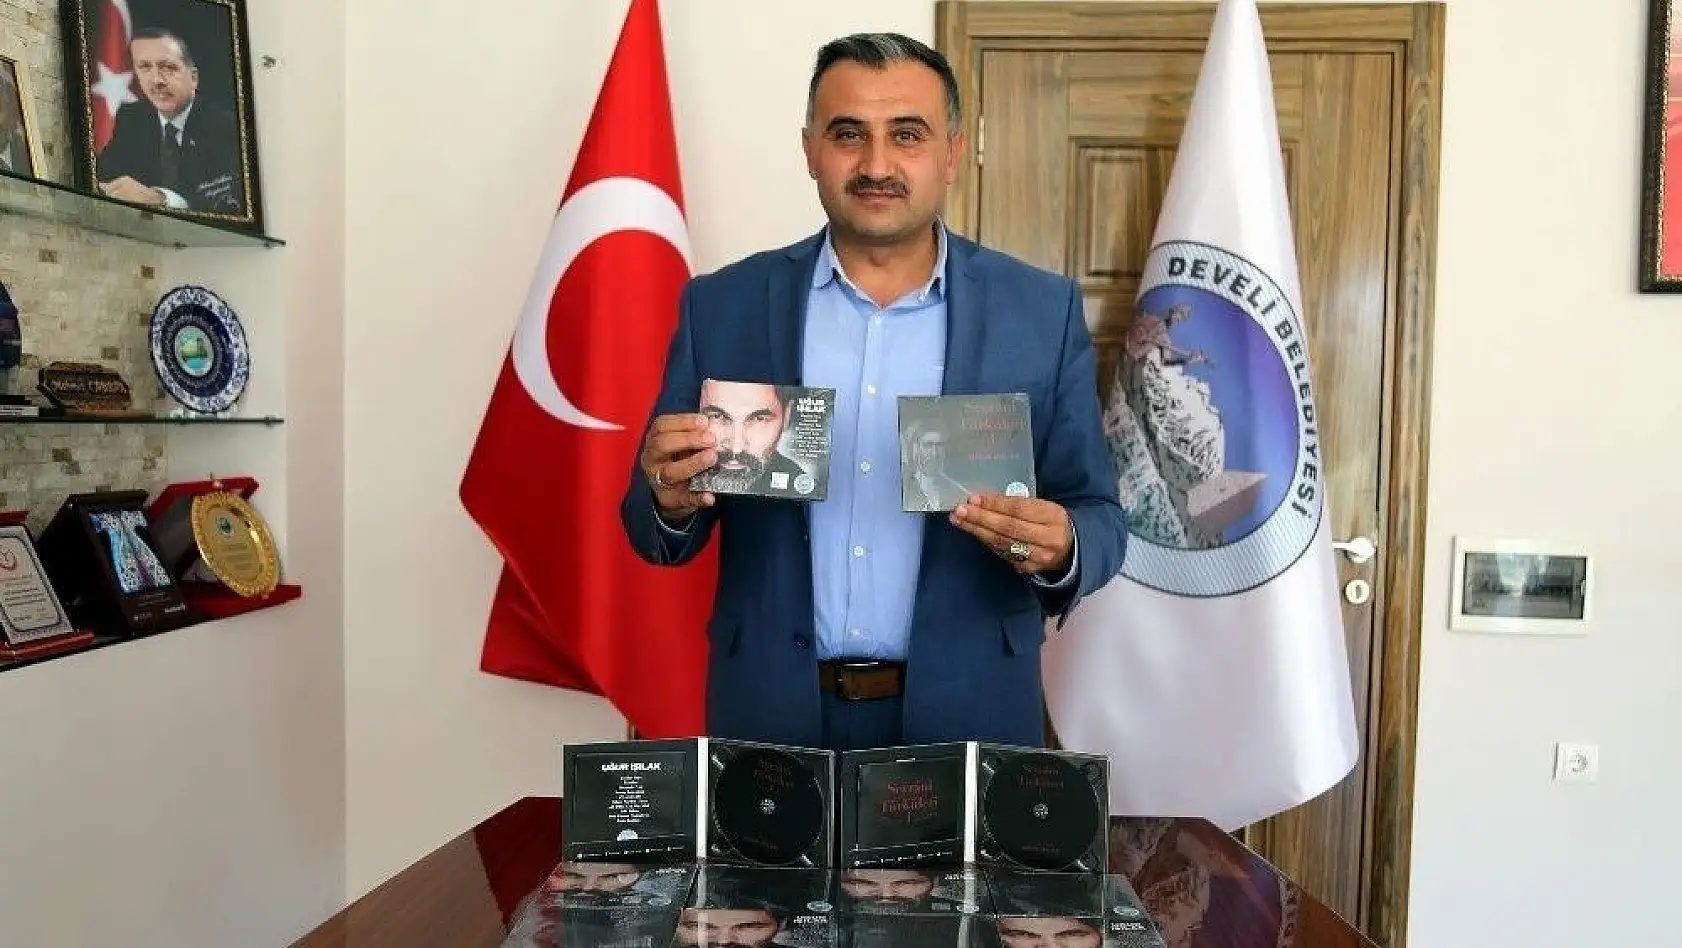 Develi Belediyesi Başkanı Mehmet Cabbar: 'Aşık Seyrani Develi'nin bir değeridir'
